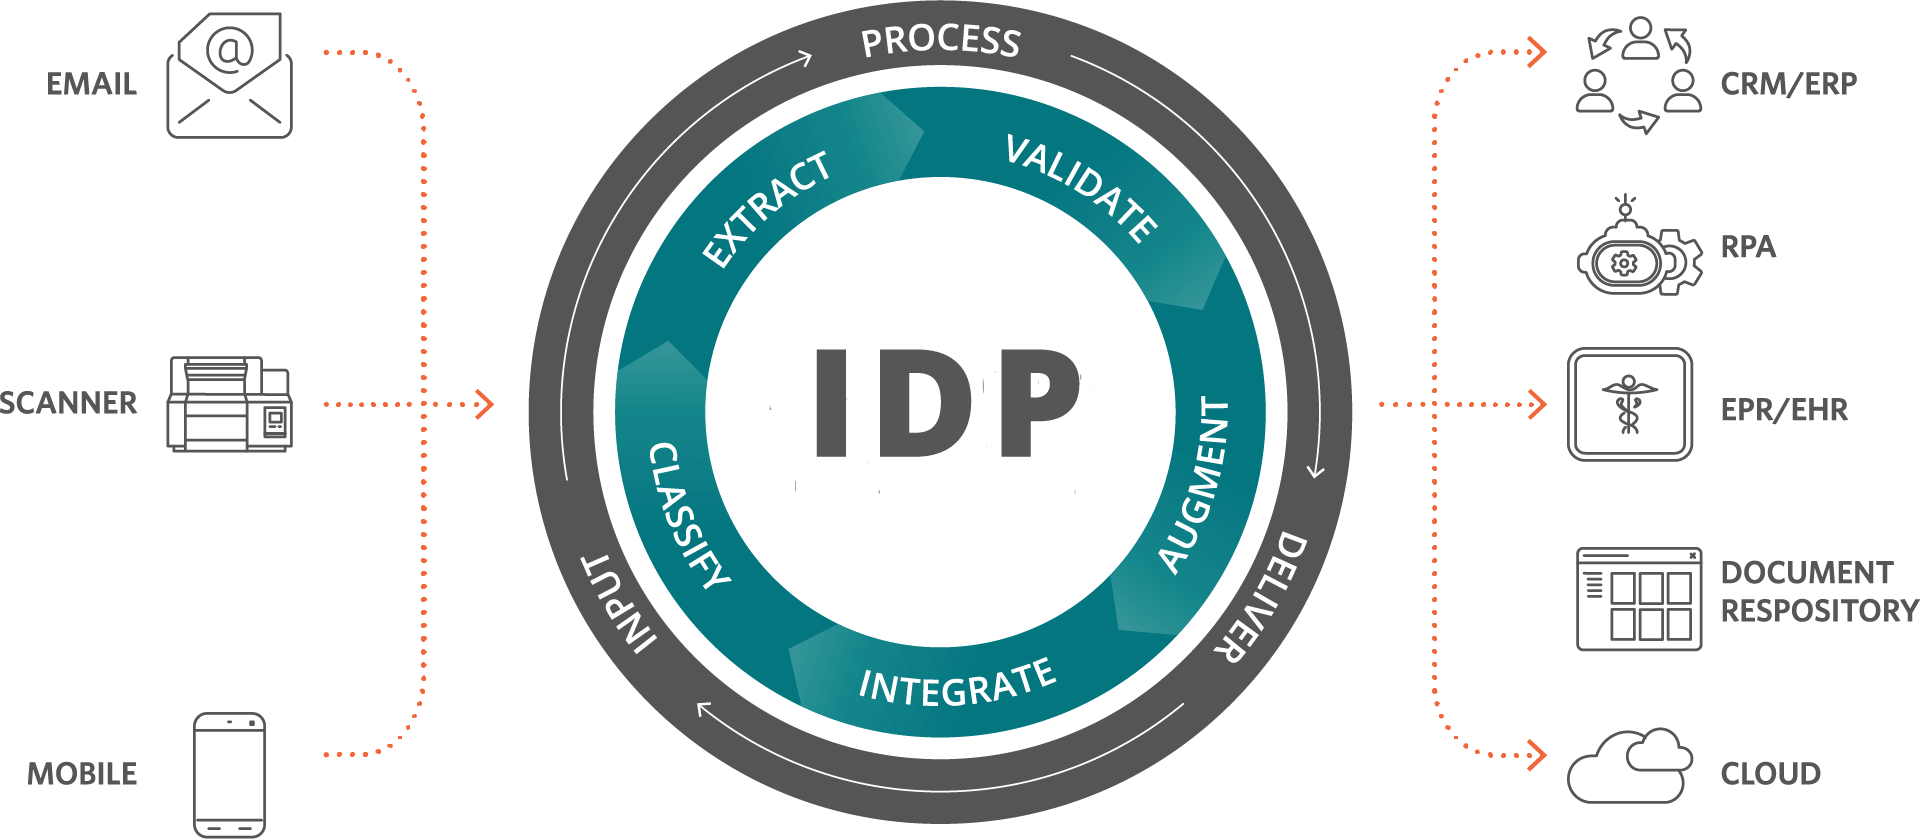 IDP Process